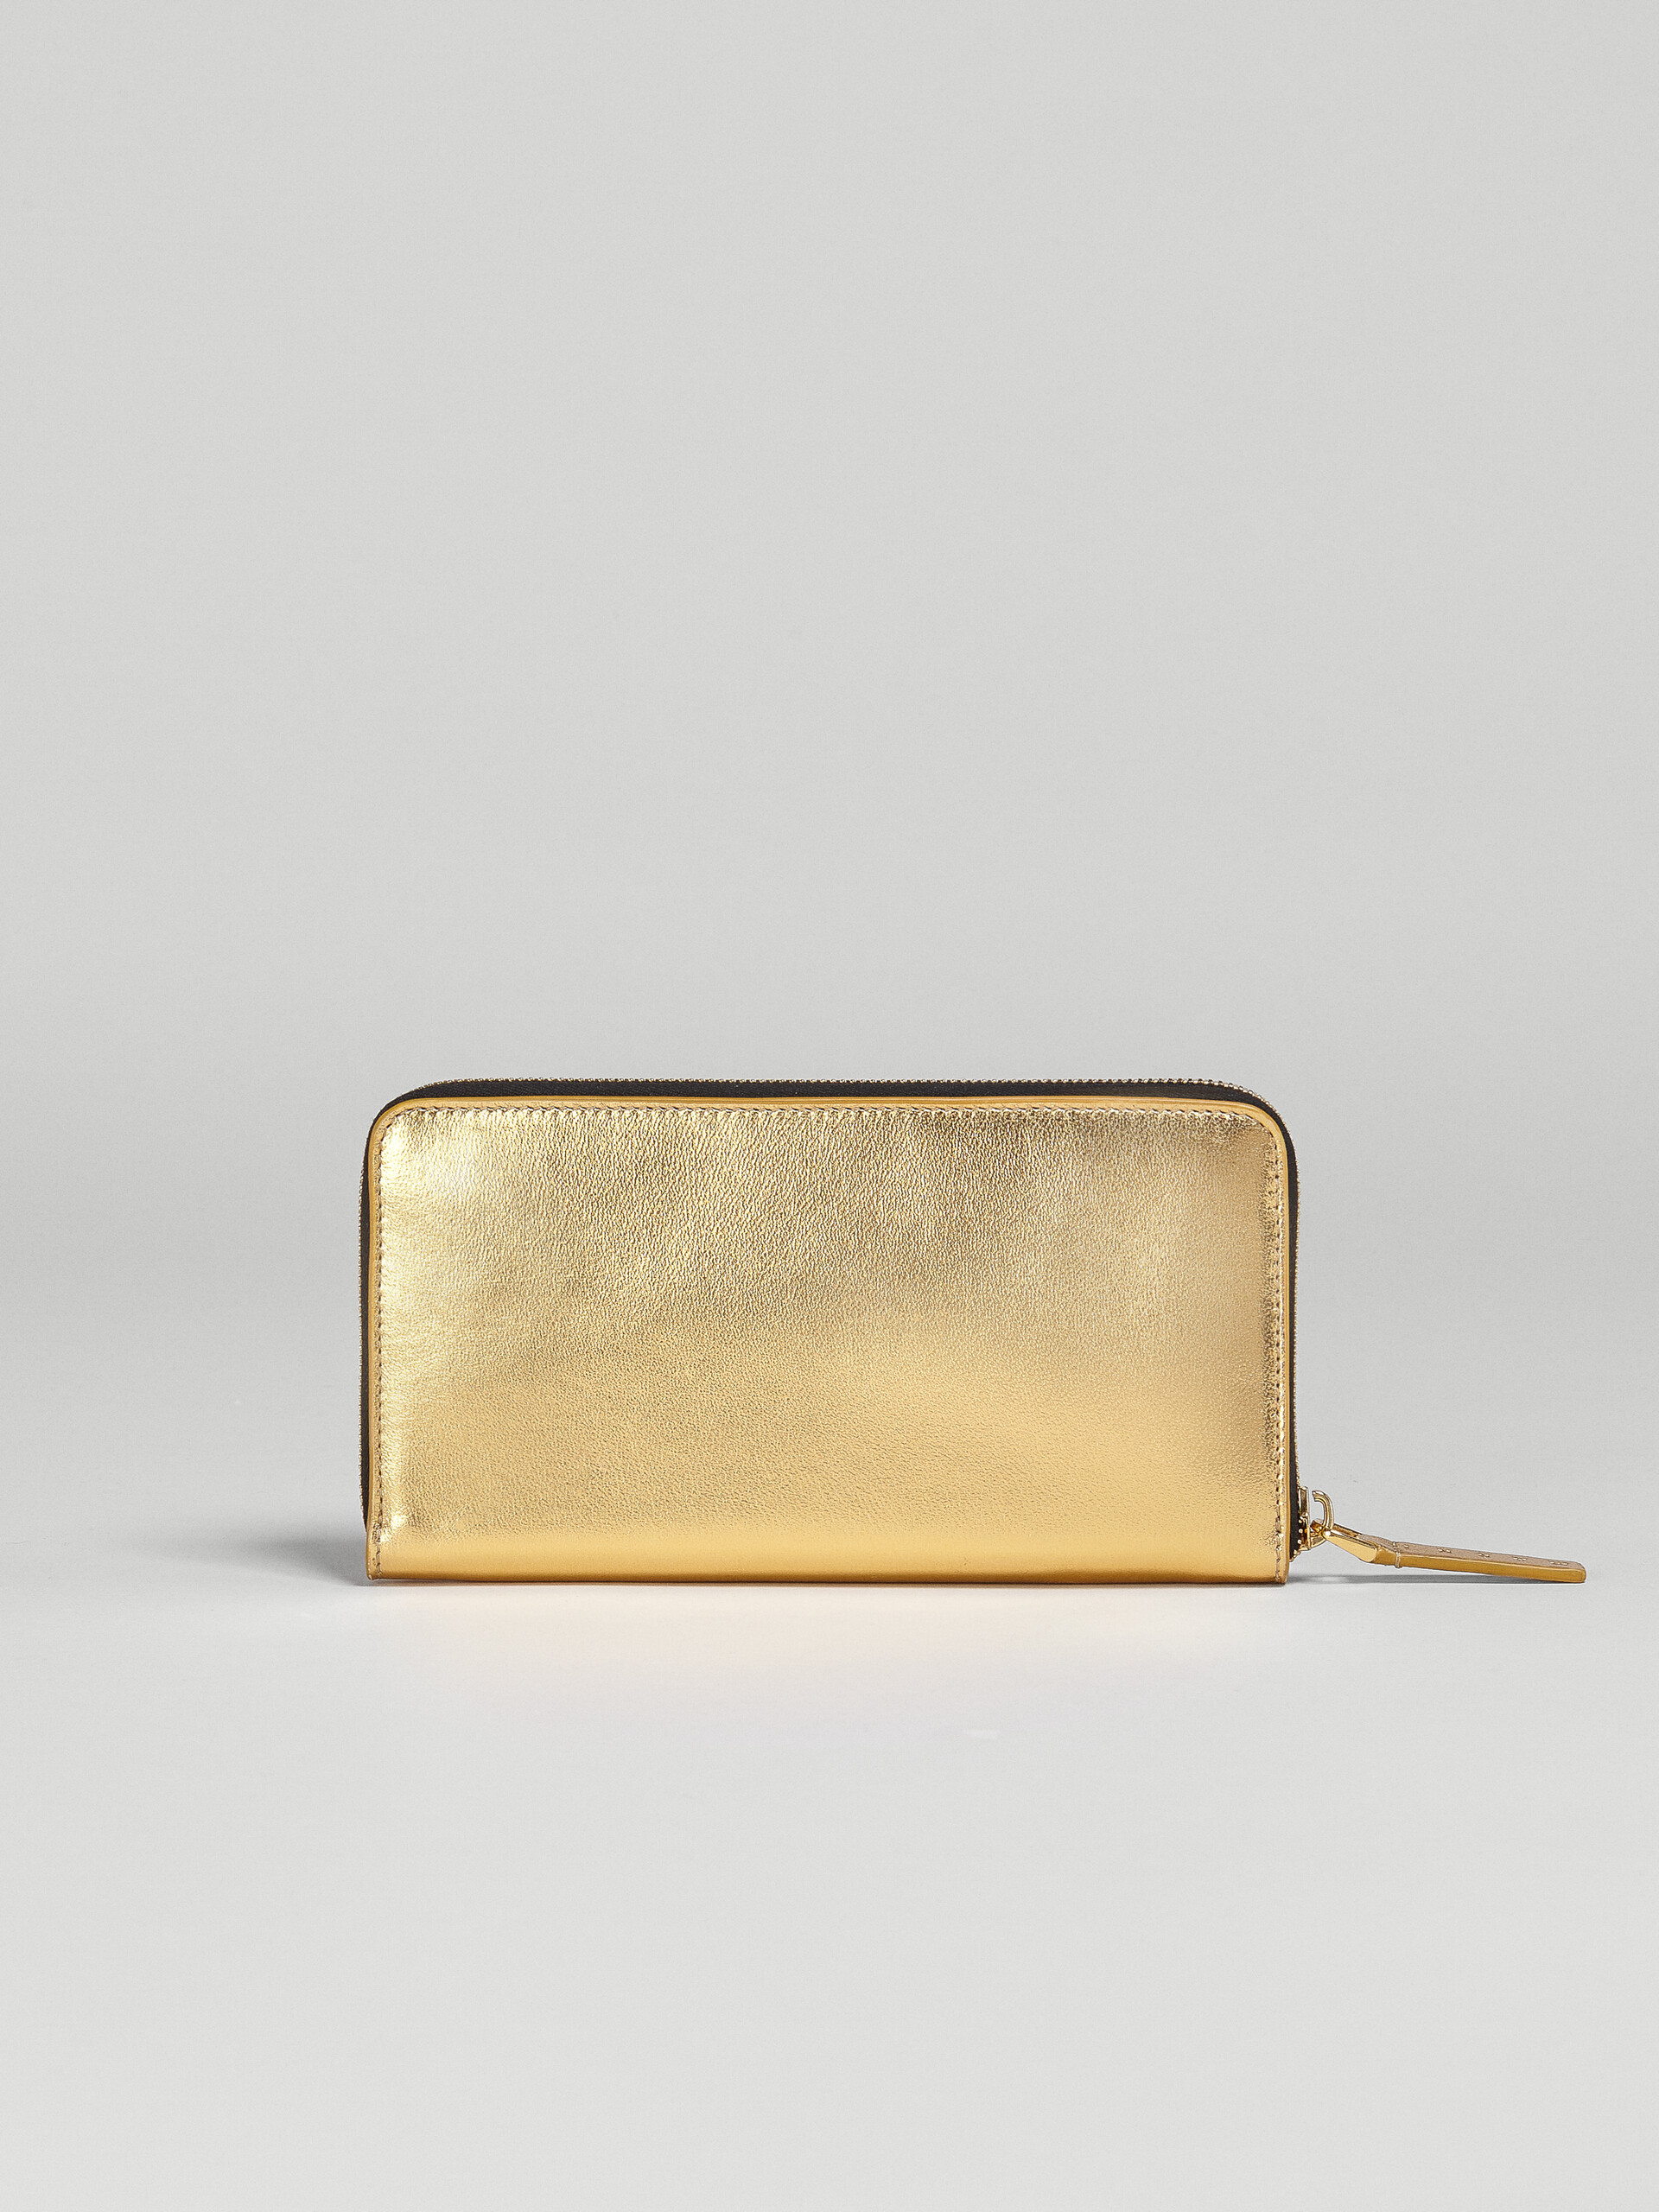 Portafoglio con zip in pelle metallizzata oro - Portafogli - Image 3